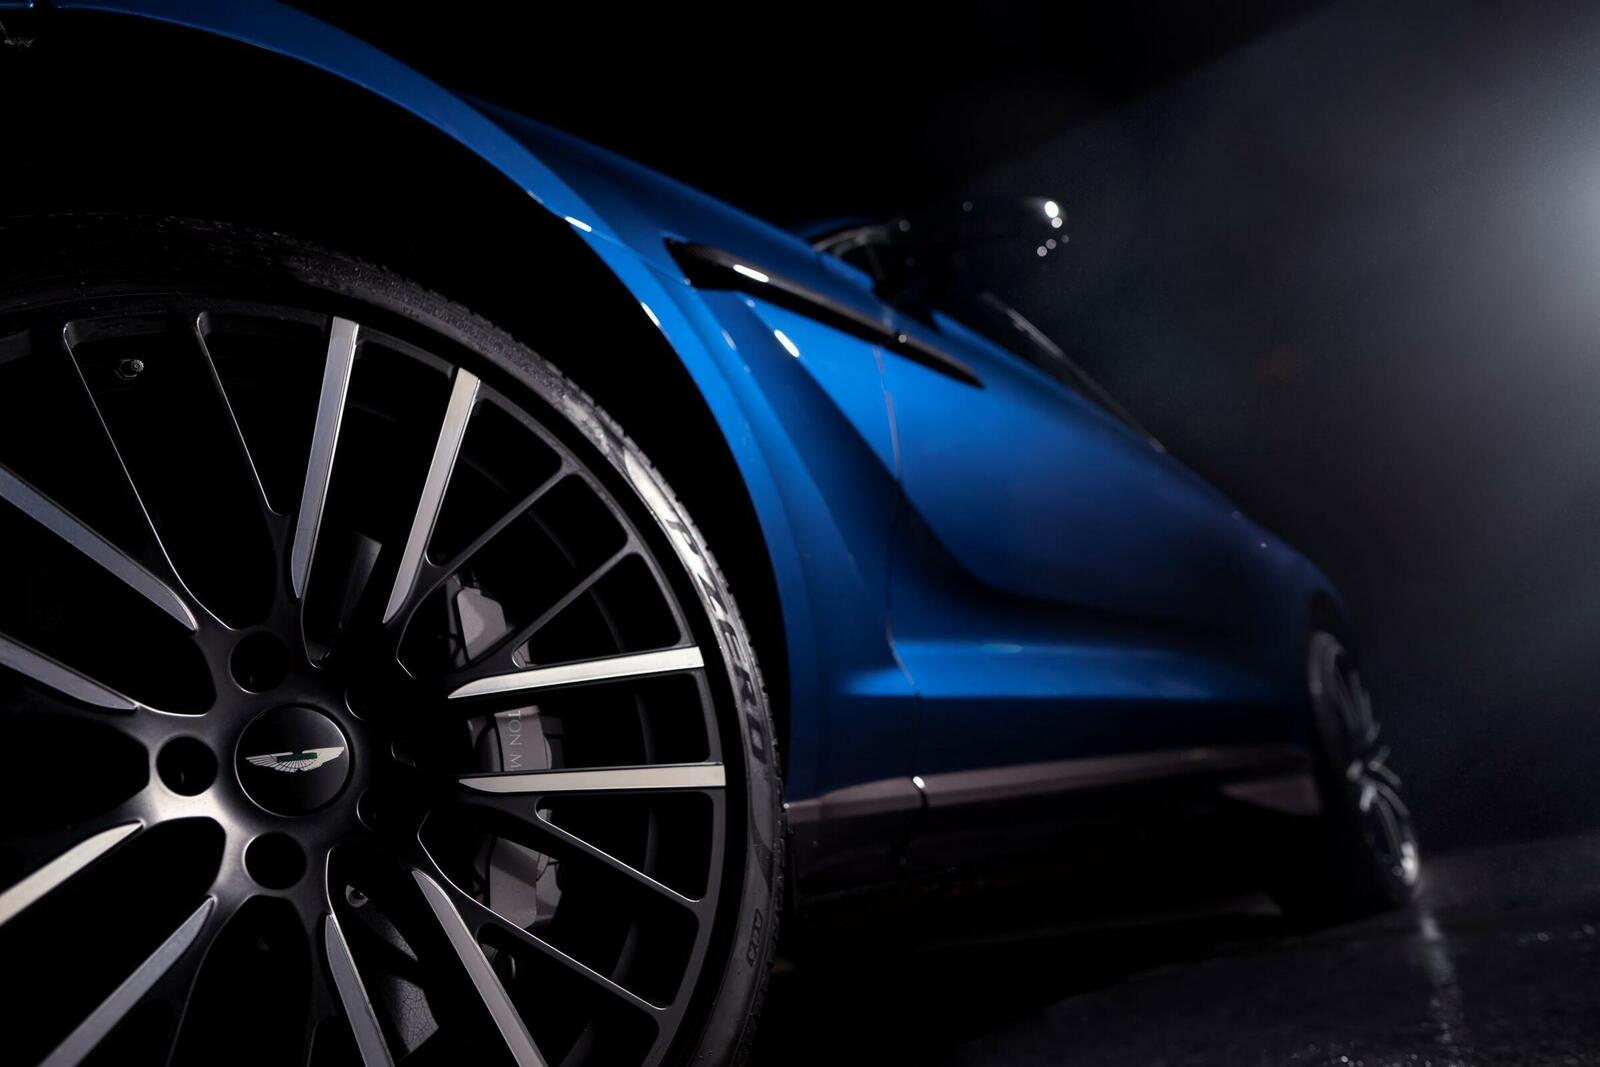 Pirelli stattet den Aston Martin DBX707 mit maßgefertigten Reifen aus.